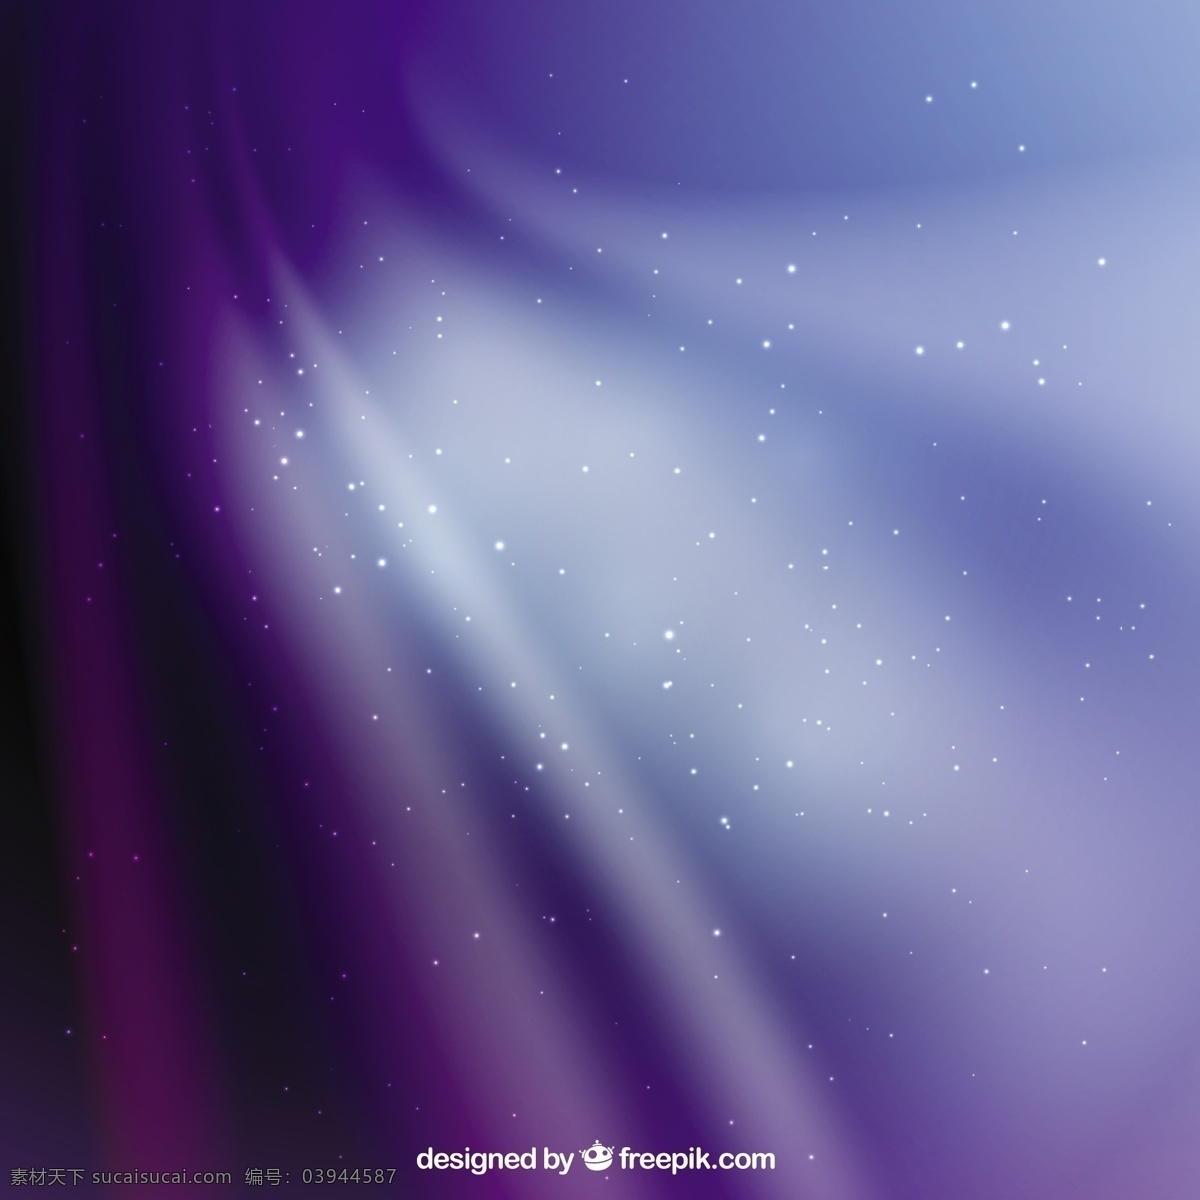 蓝色 紫色 空间 背景 抽象 天空 蓝色背景 科学 星星 星系 发光 宇宙 紫色背景 星星背景 蓝色的天空 明亮 外层空间 天文